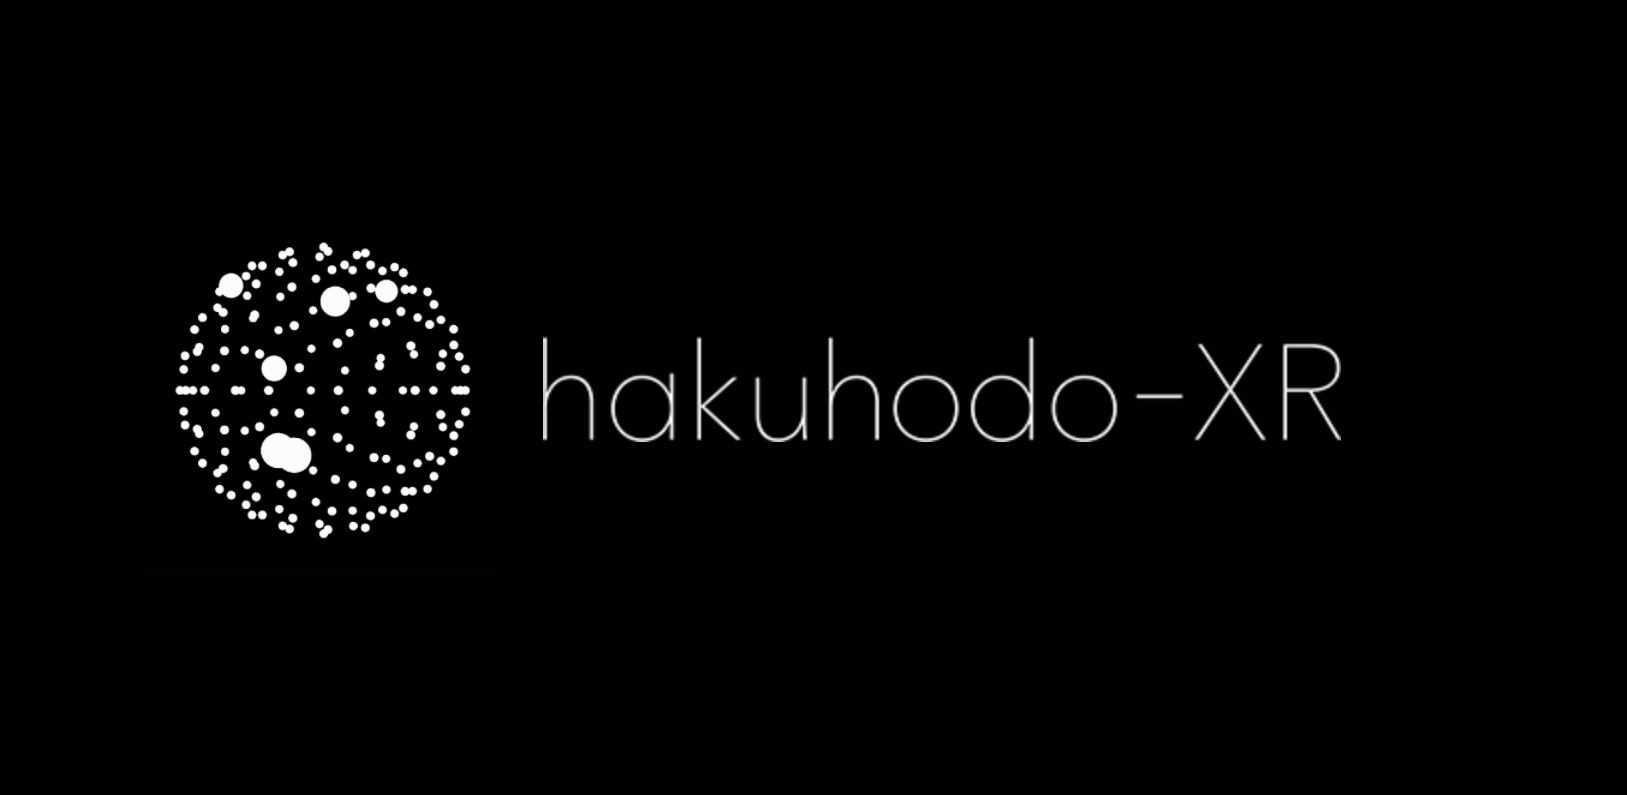 博報堂グループ、マーケティングなどへのXR活用を図る新プロジェクト「hakuhodo-XR」を始動